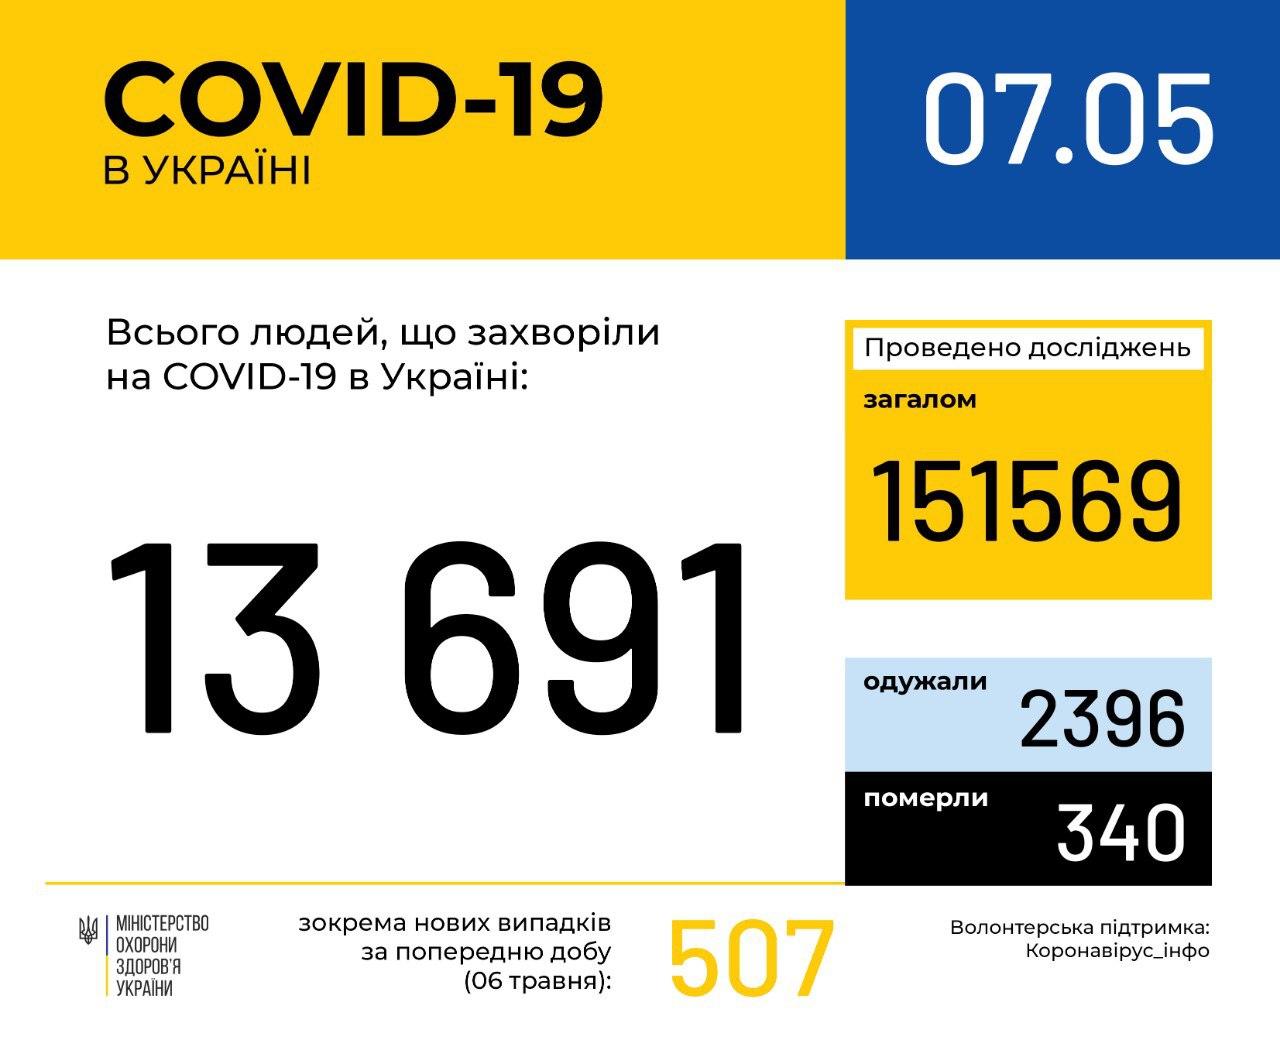 В Україні зафіксовано 13691 випадок коронавірусної хвороби COVID-19, - МОЗ